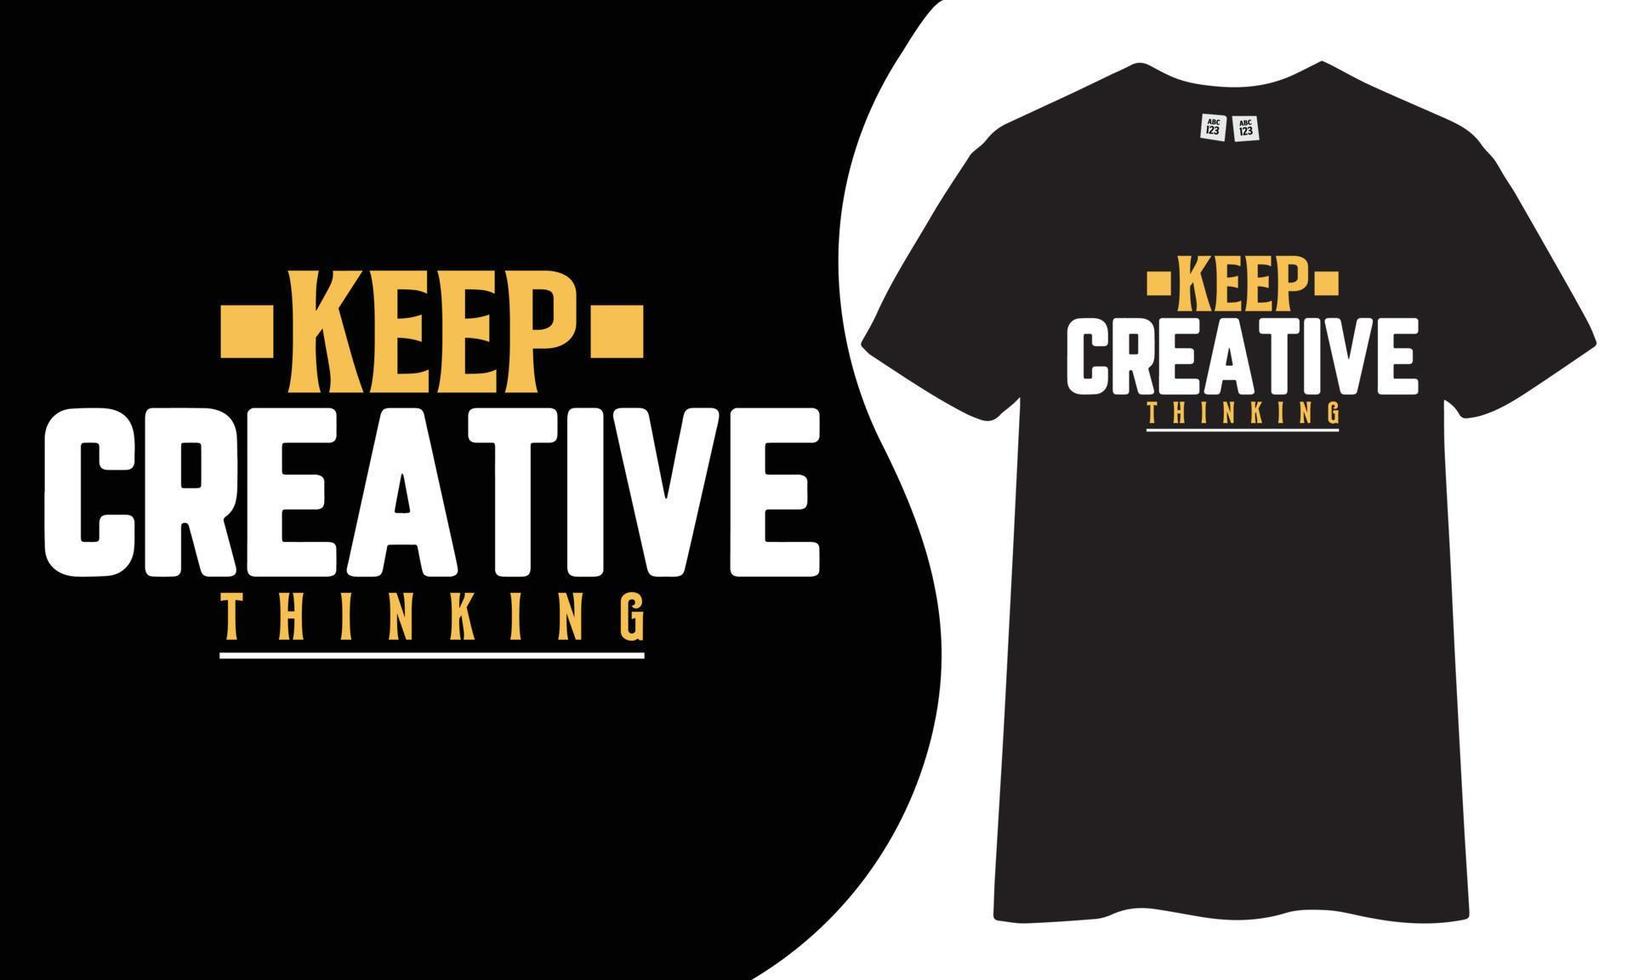 conception de t-shirt motivante et inspirante. gardez la pensée créative cite la conception de t-shirt vecteur